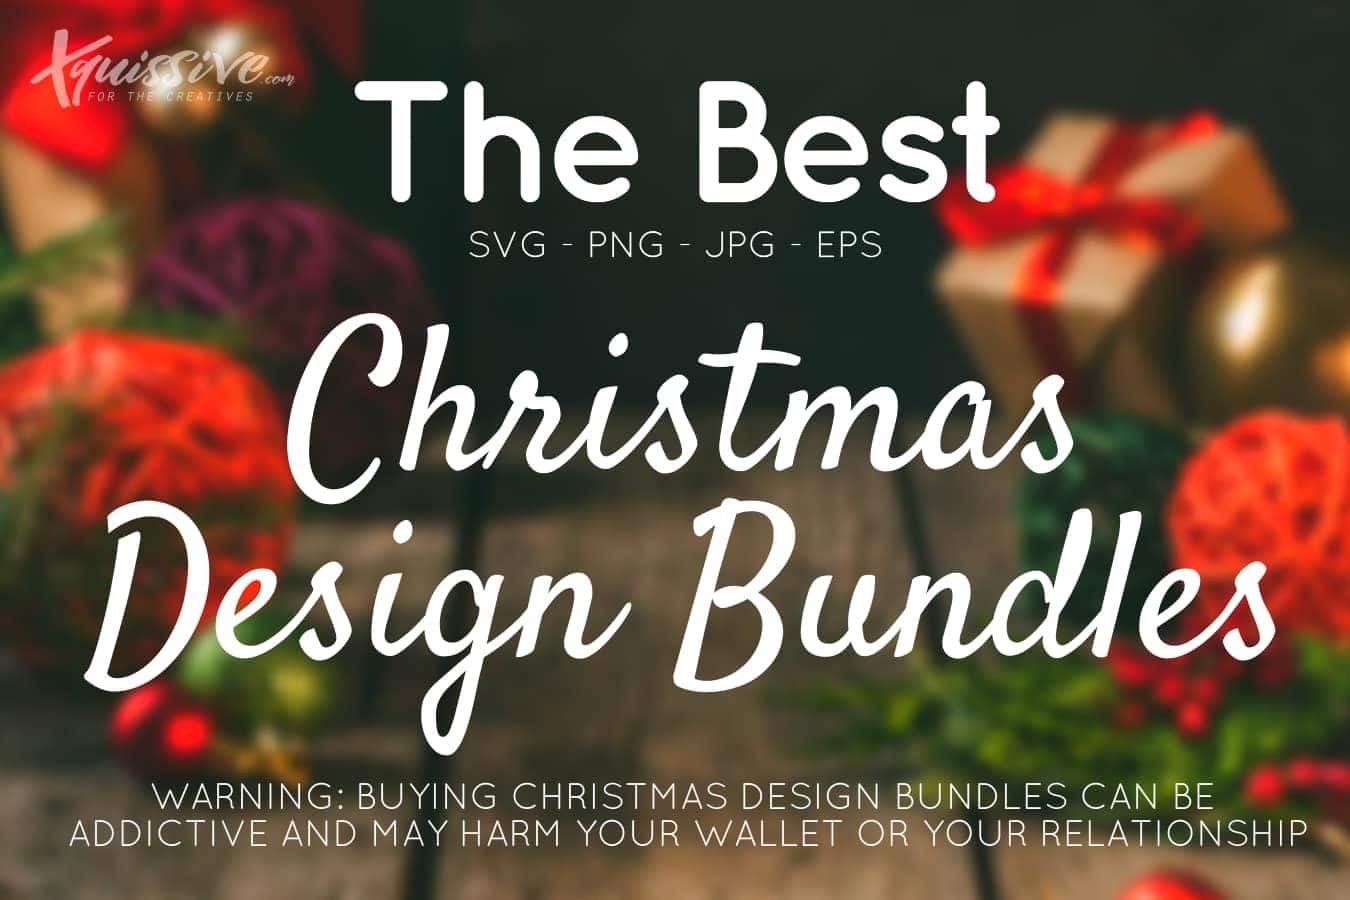 Best Christmas Design Bundles (SVG EPS JPG PNG)